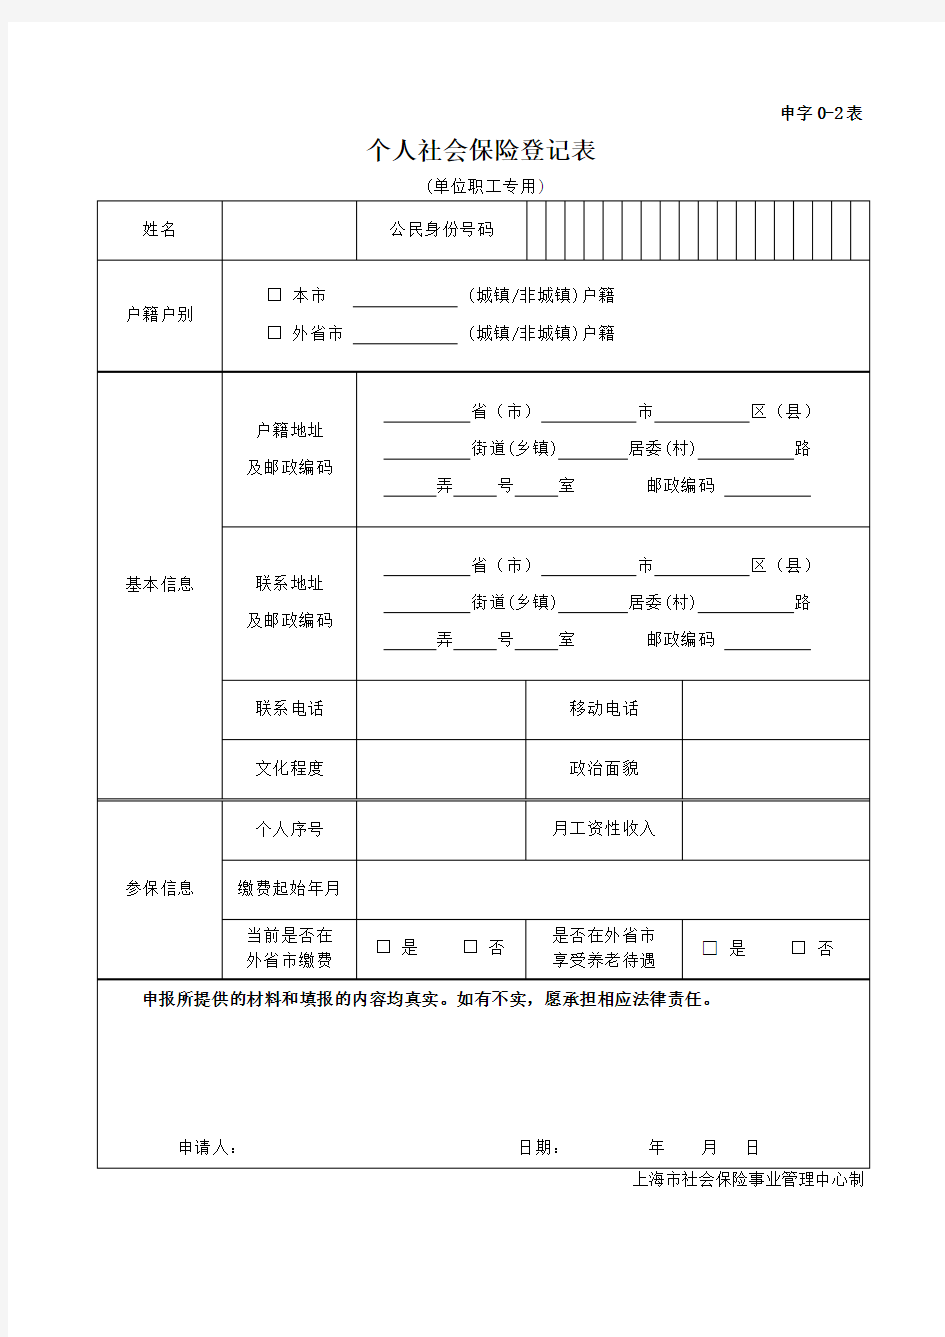 上海市个人社会保险登记表(申字0-2表)